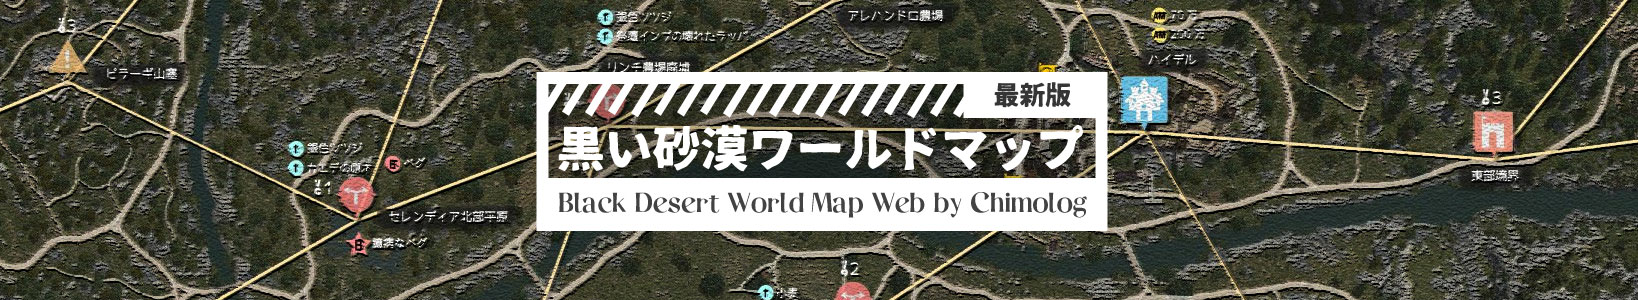 黒い砂漠のワールドマップ最新バージョンを作りました ちもろぐ